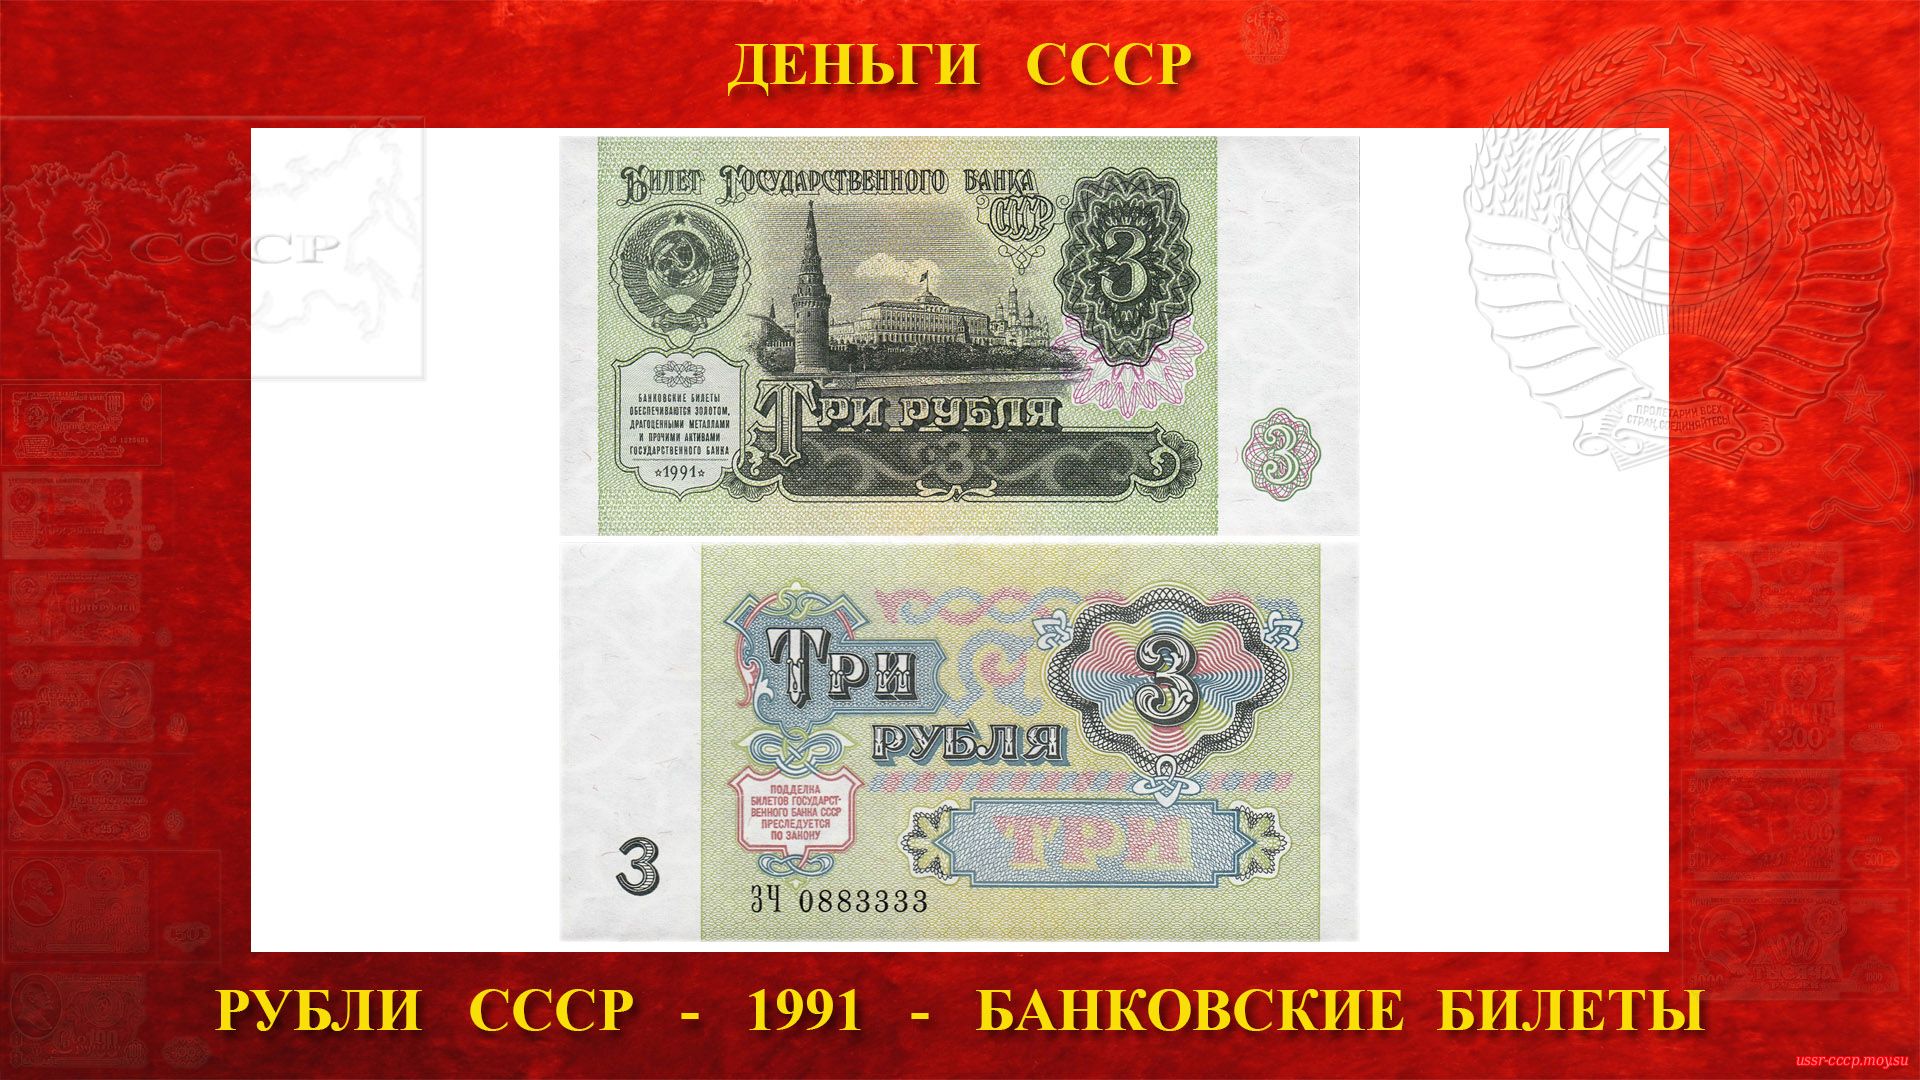 Стояла 3. 3 Рубля СССР. Советские деньги 1 рубль. Деньги СССР 1991 года. Советские деньги образца 1961 года.